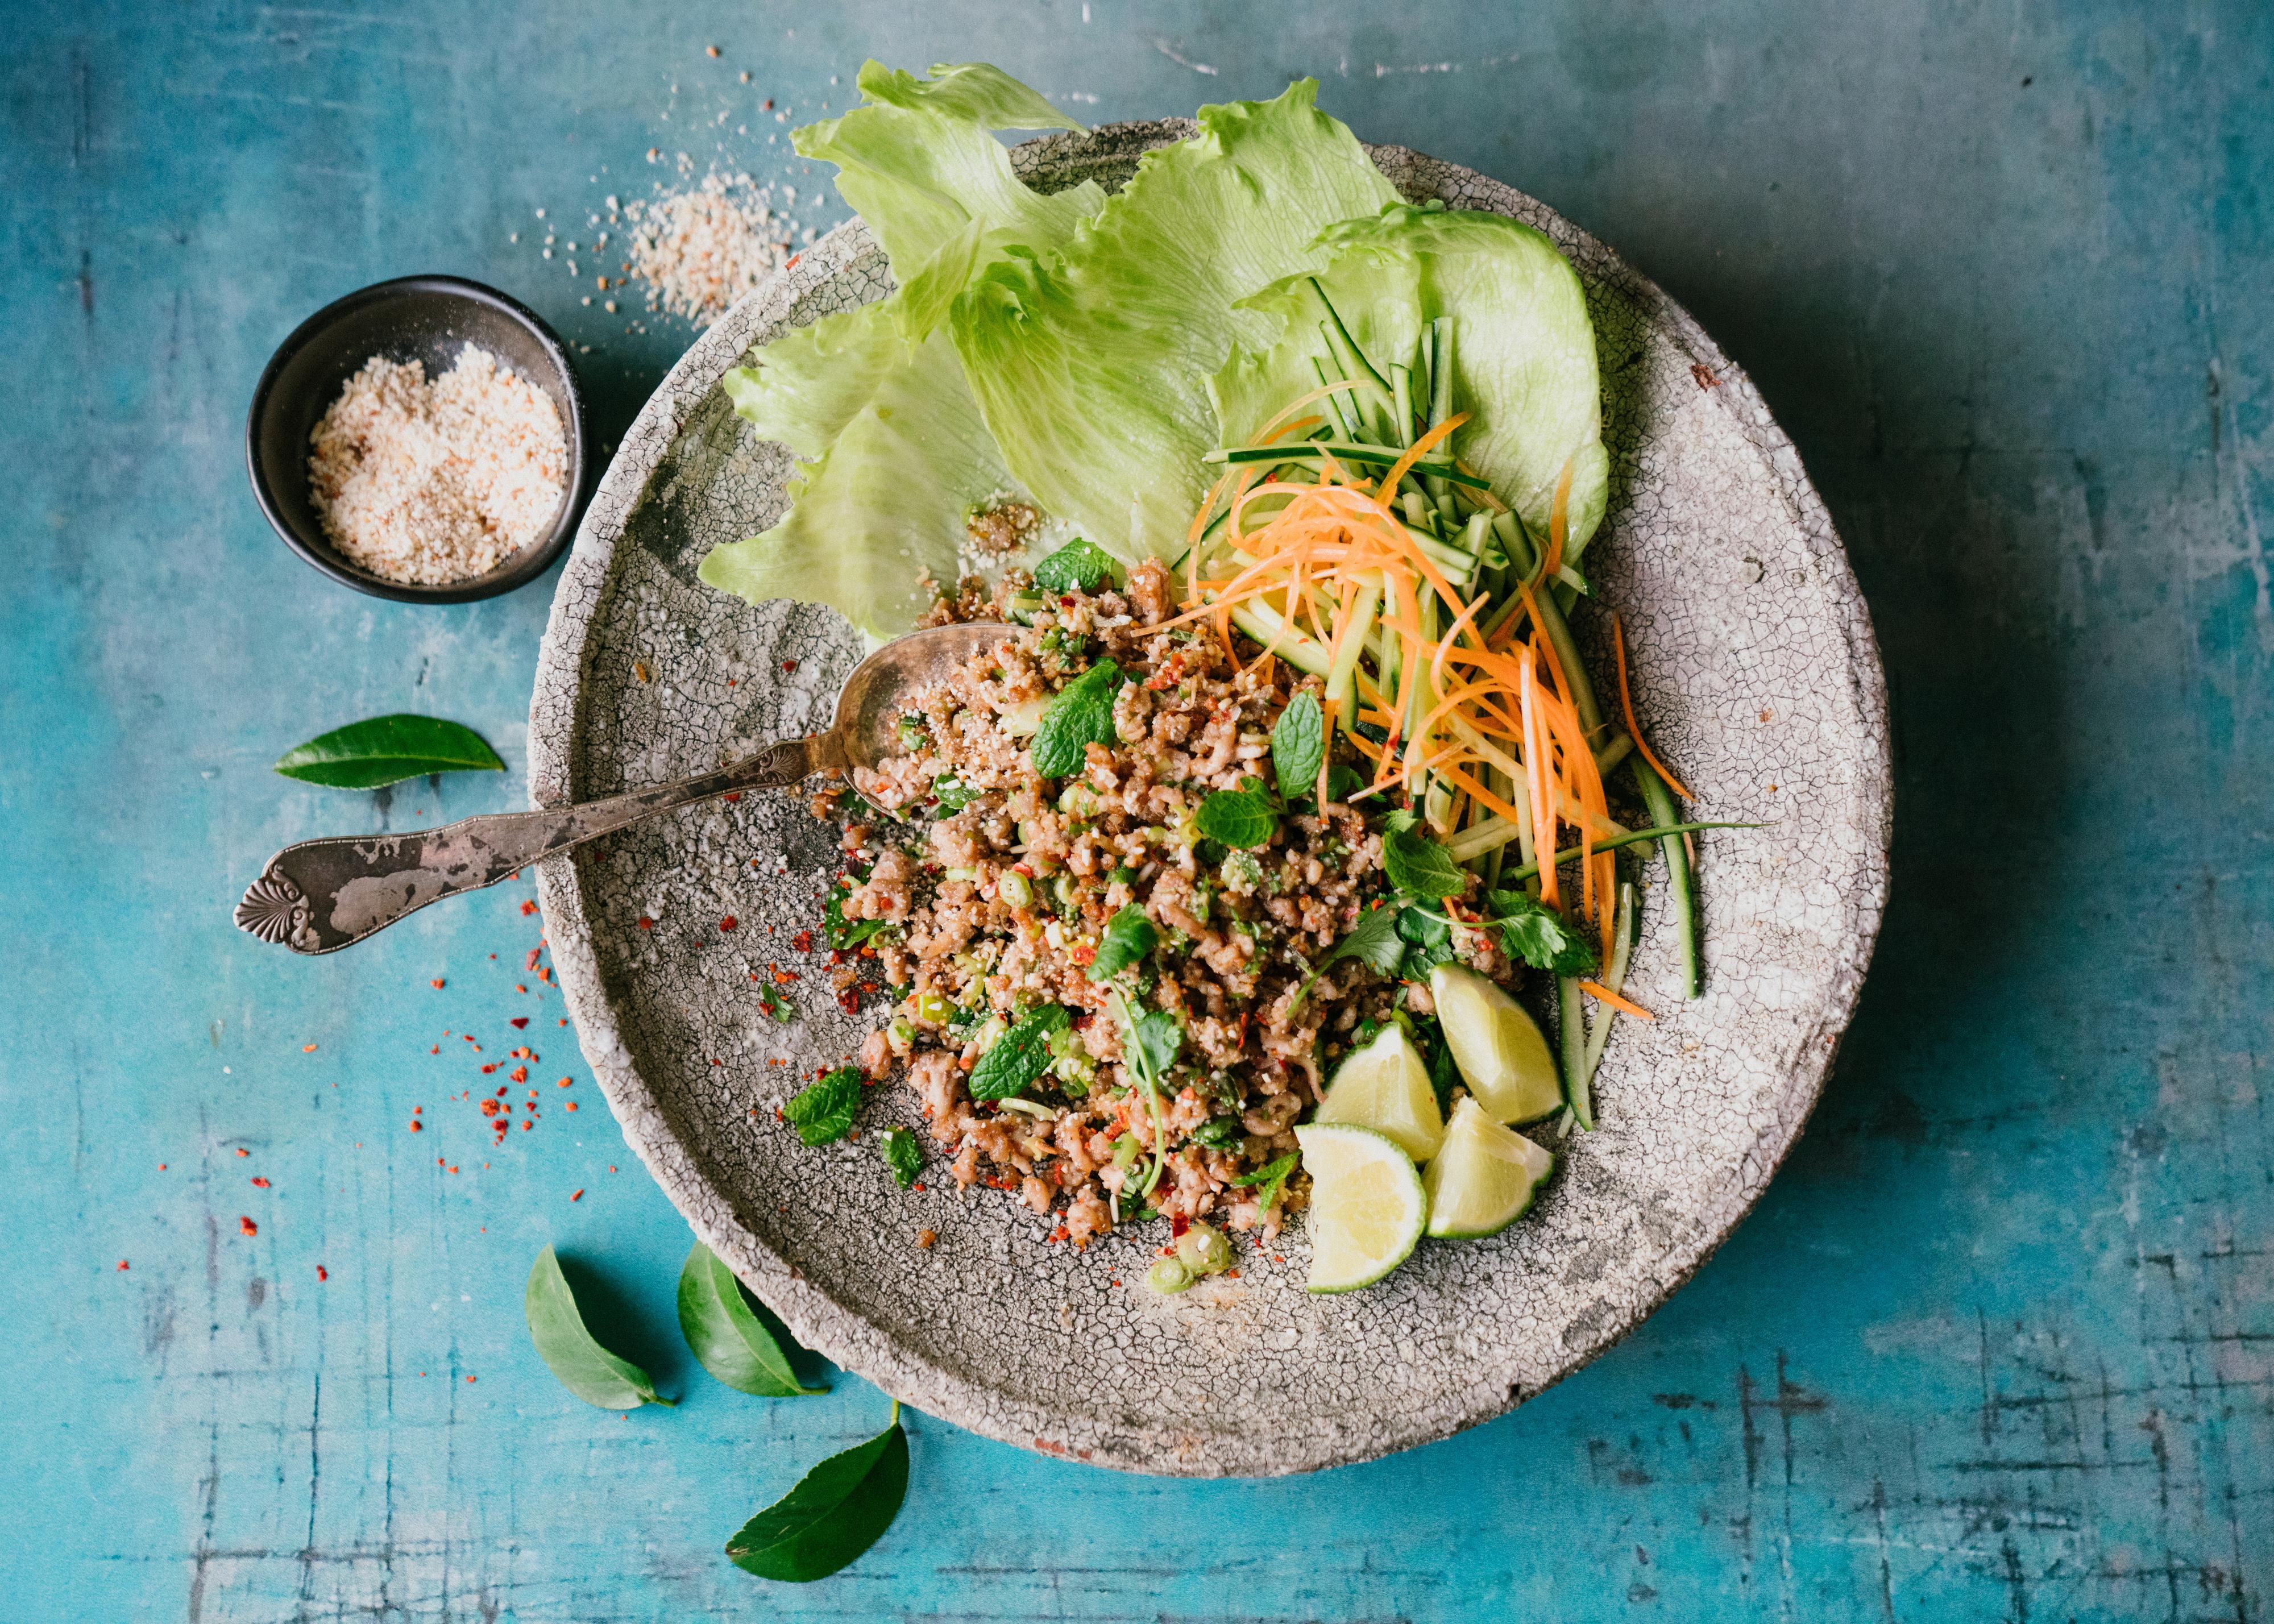 THAI: Kjøttsalat kan nytes varm som middag eller kald til lunsj.